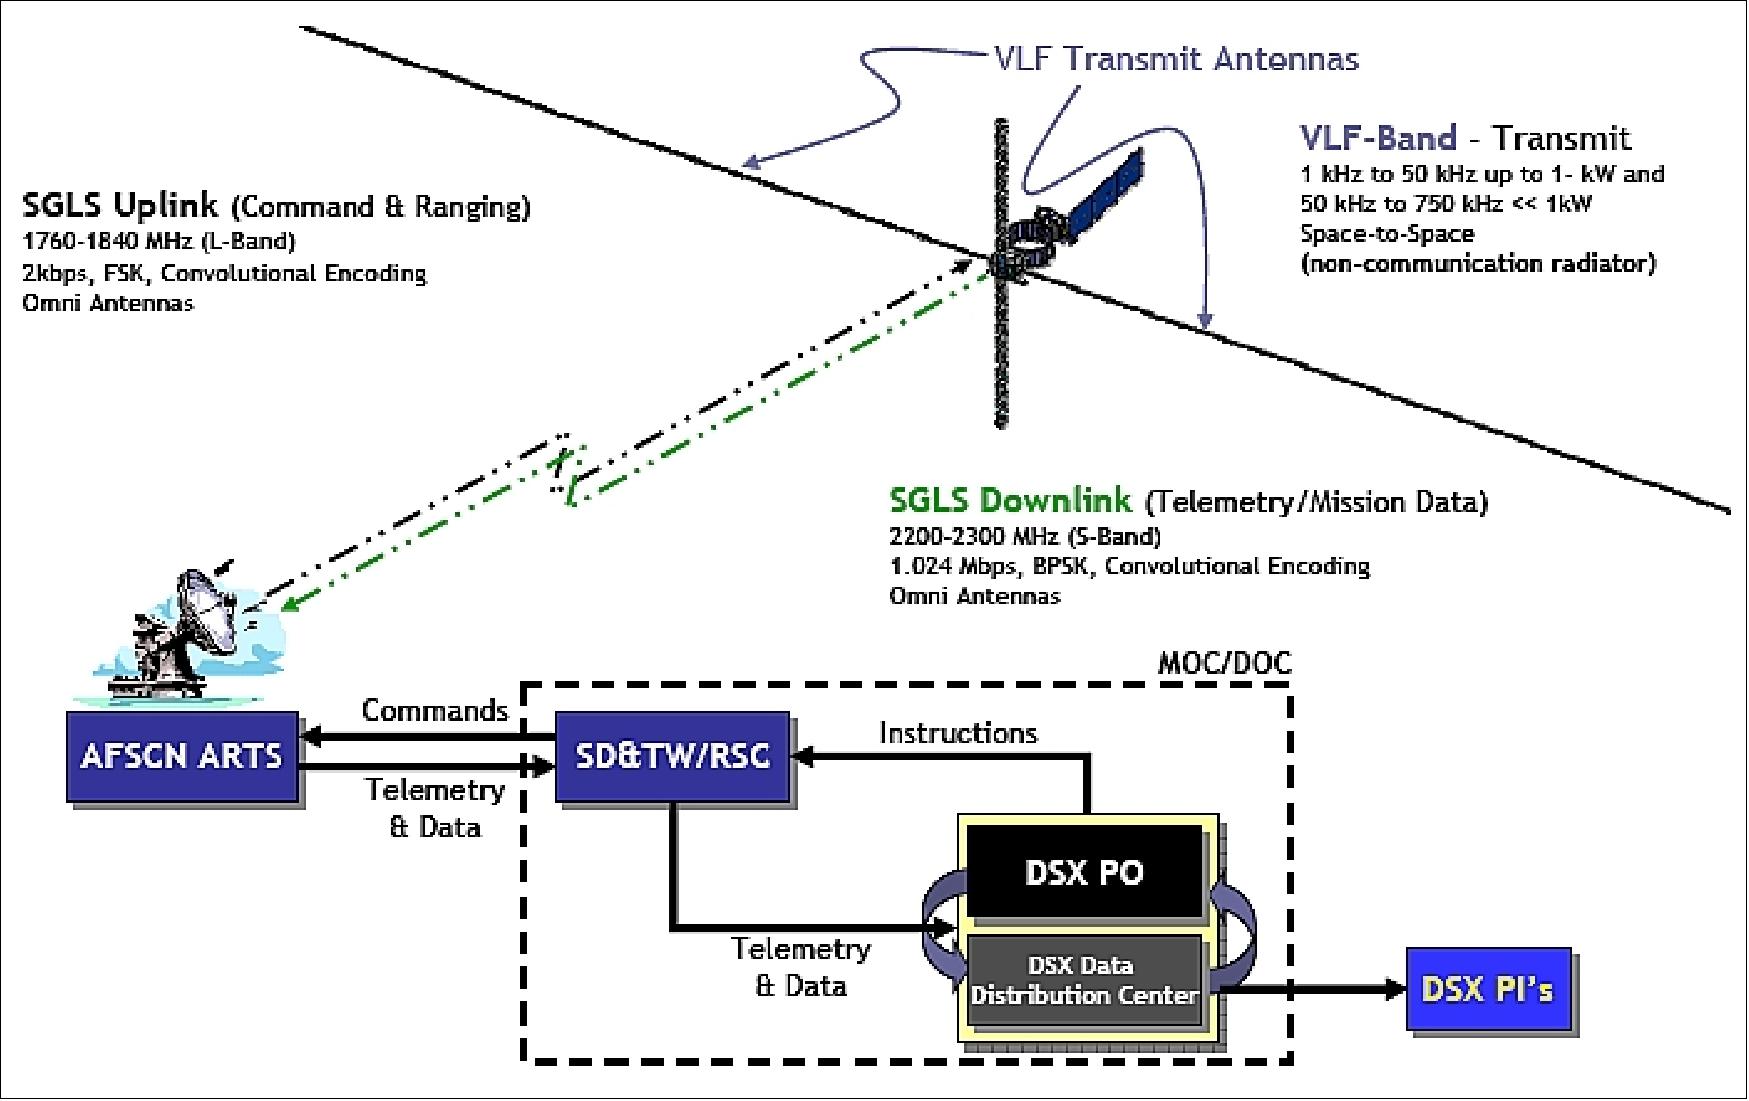 Figure 22: DSX RF emissions flow diagram (image credit: AFRL)